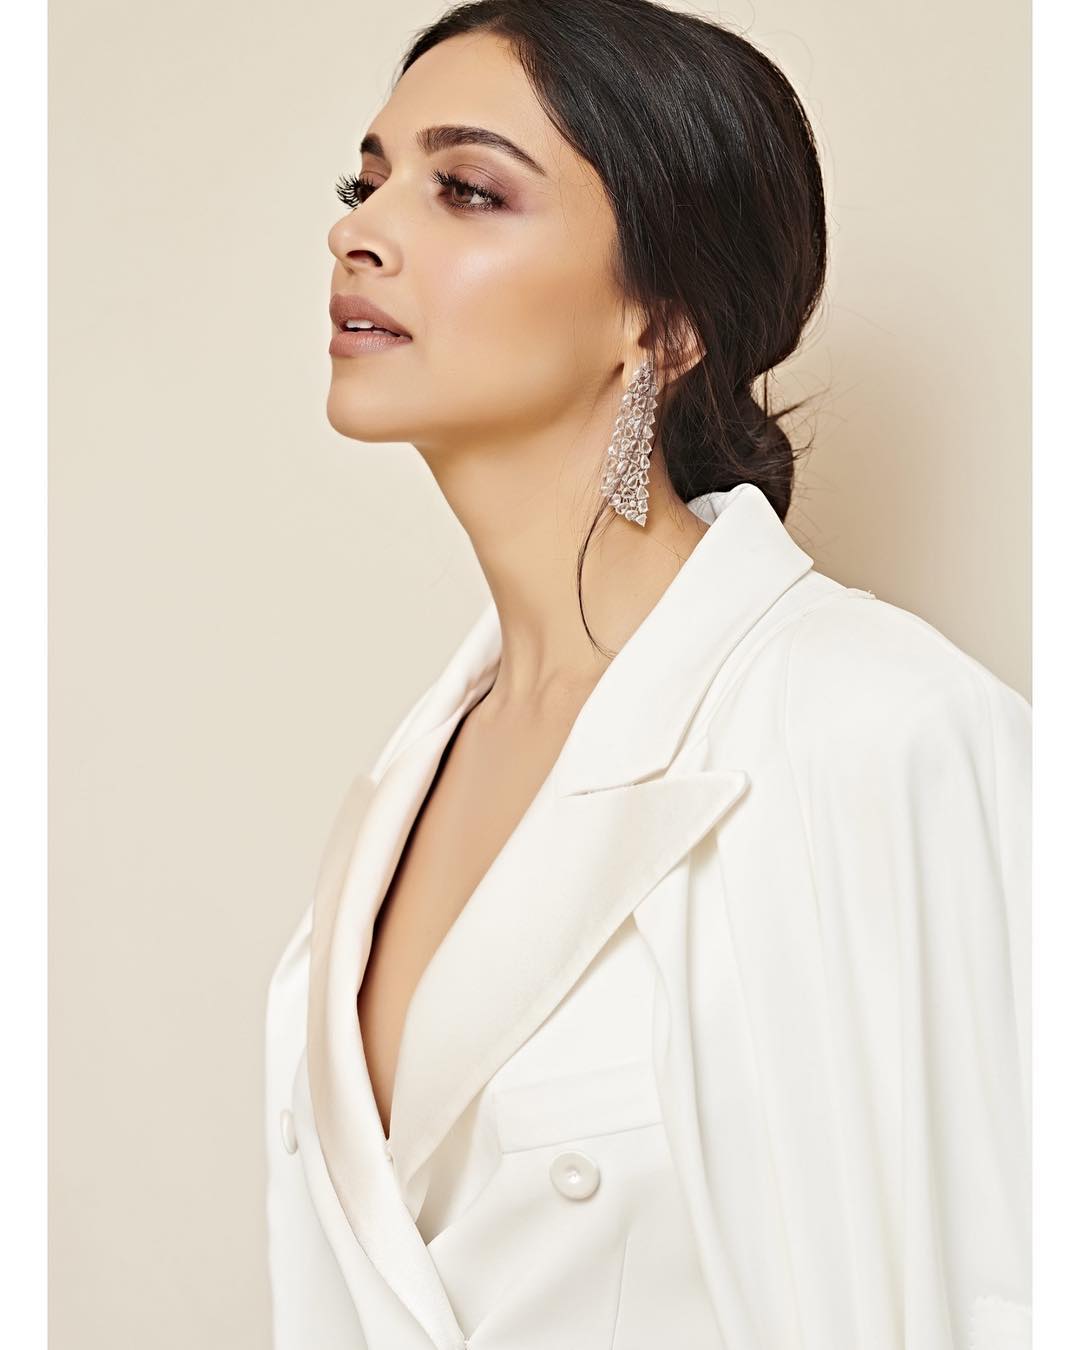  Deepika Padukone’s silver studded earrings